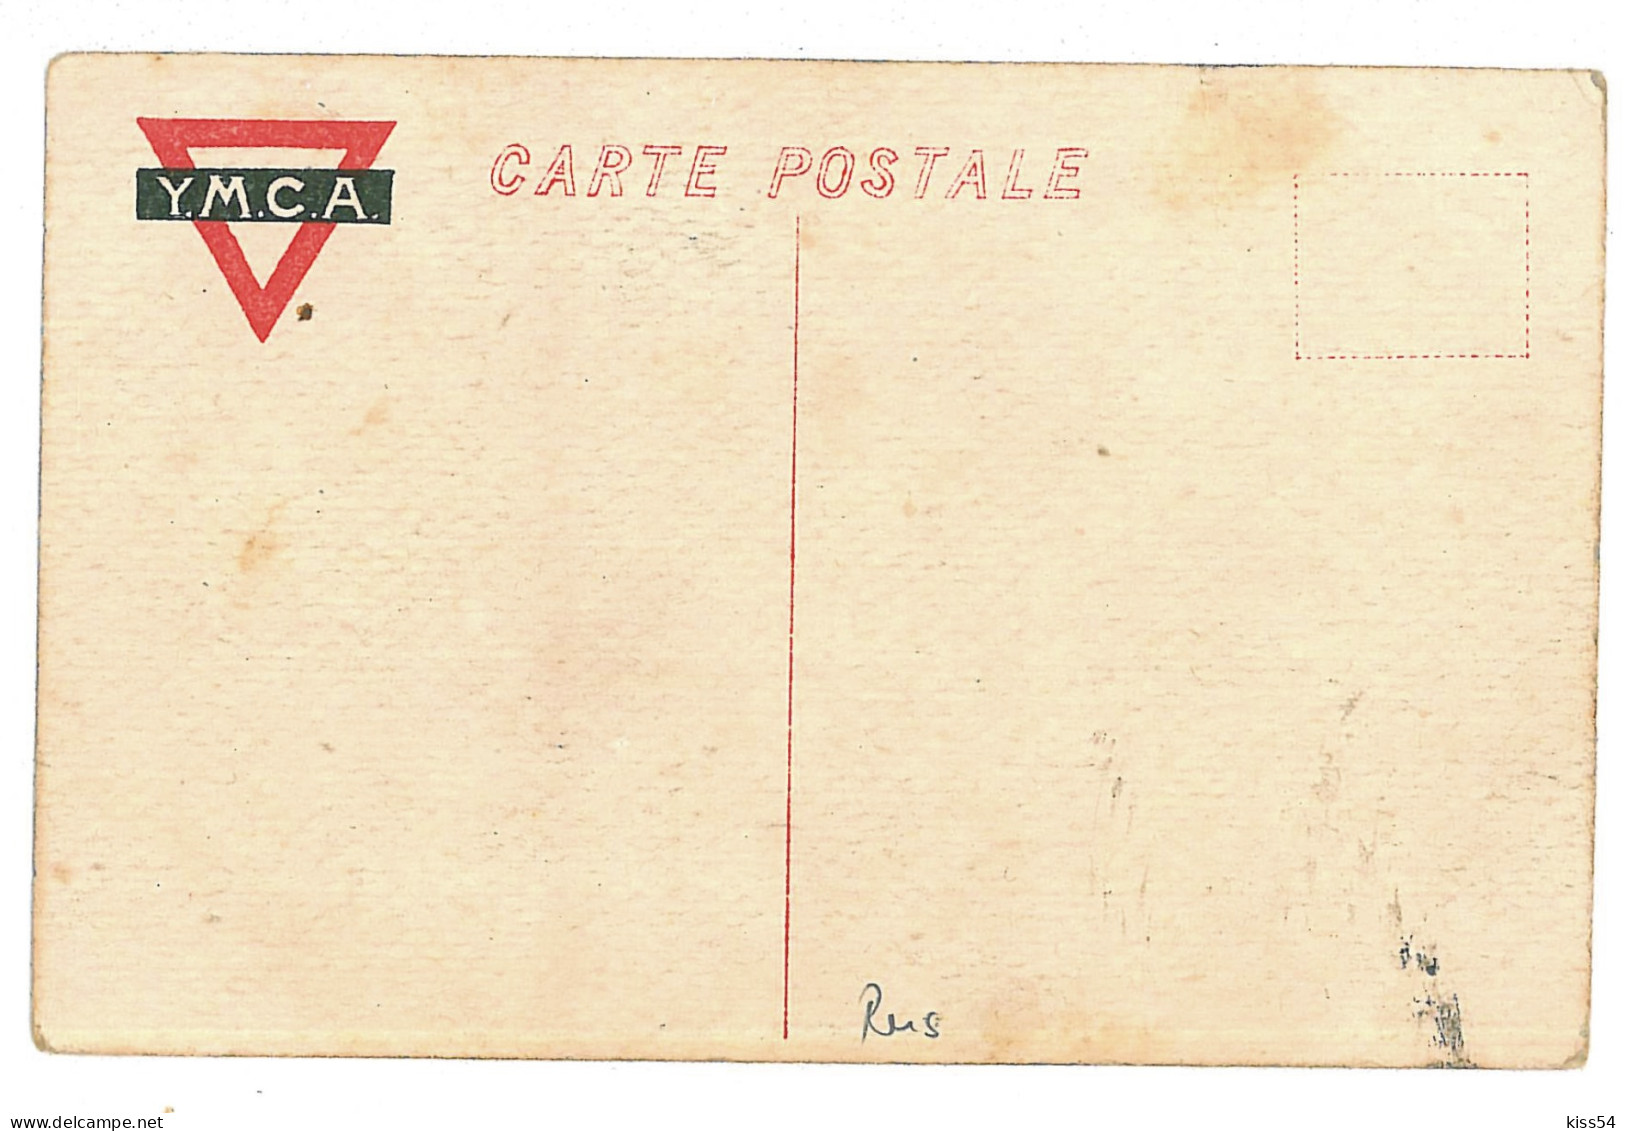 RUS 42 - 10114  VLADIVOSTOK, Russia - Old Postcard - Unused - Russia